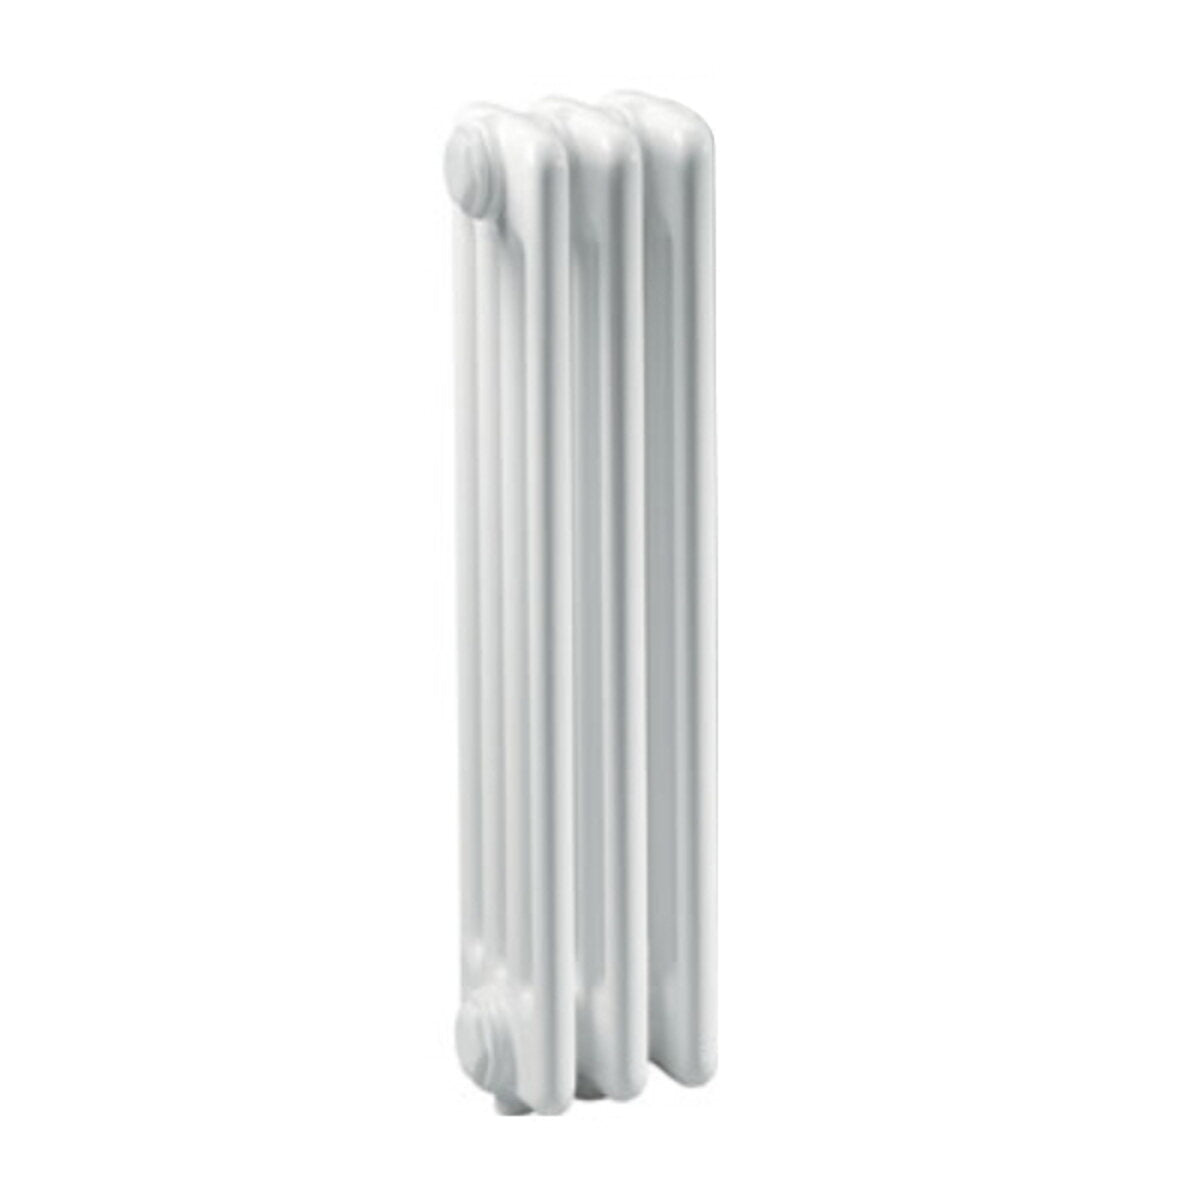 Ercos Comby Stahlsäulenheizkörper 3 Elemente 3 Säulen Achsabstand 1435 mm